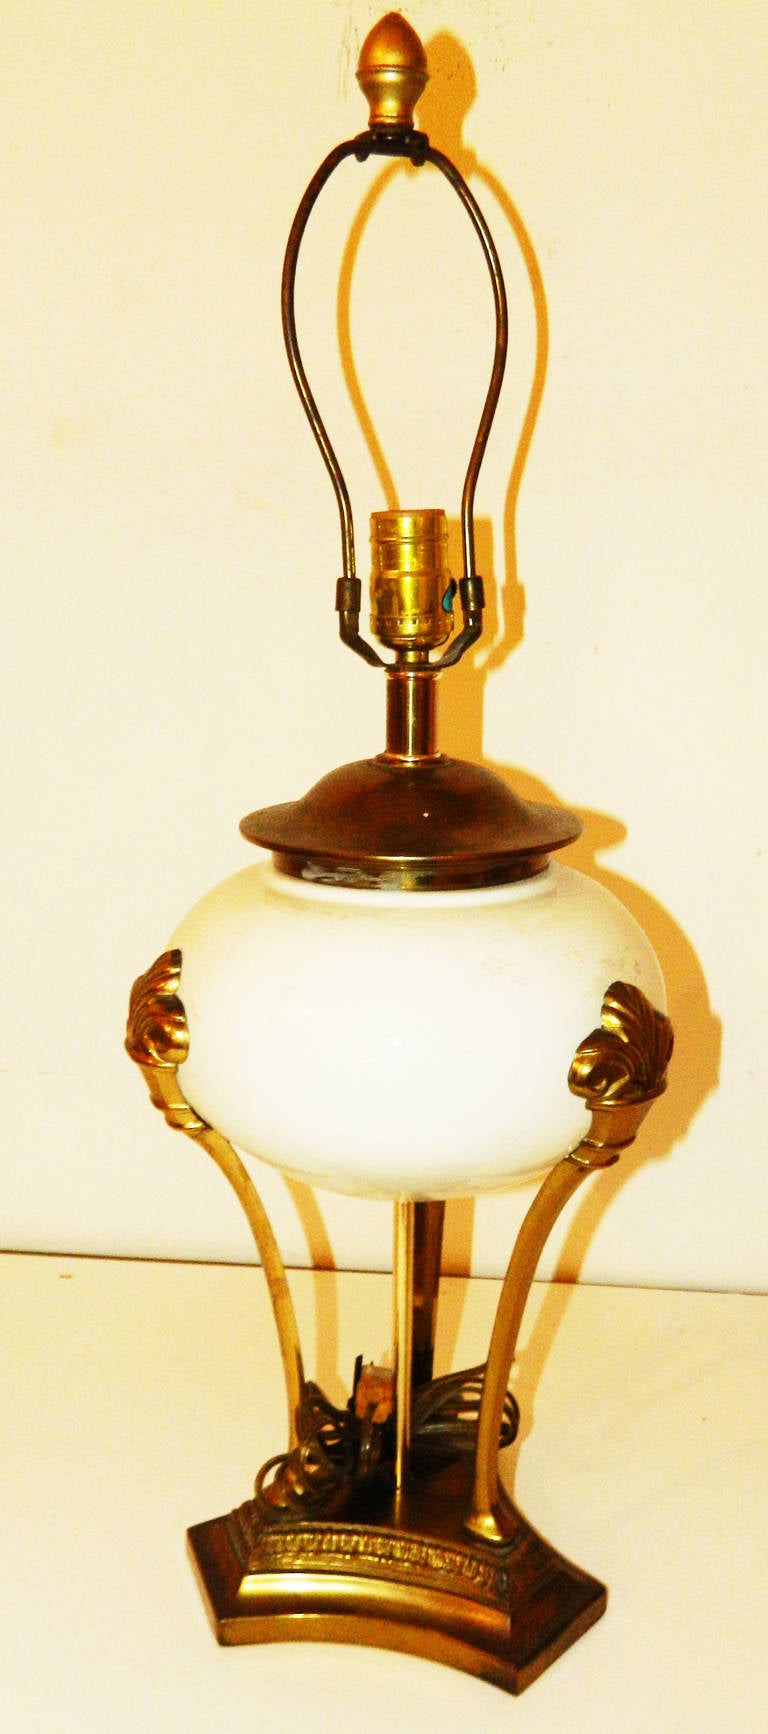 Sehr schönes Paar neoklassischer Tischlampen im Chapman-Stil.
26